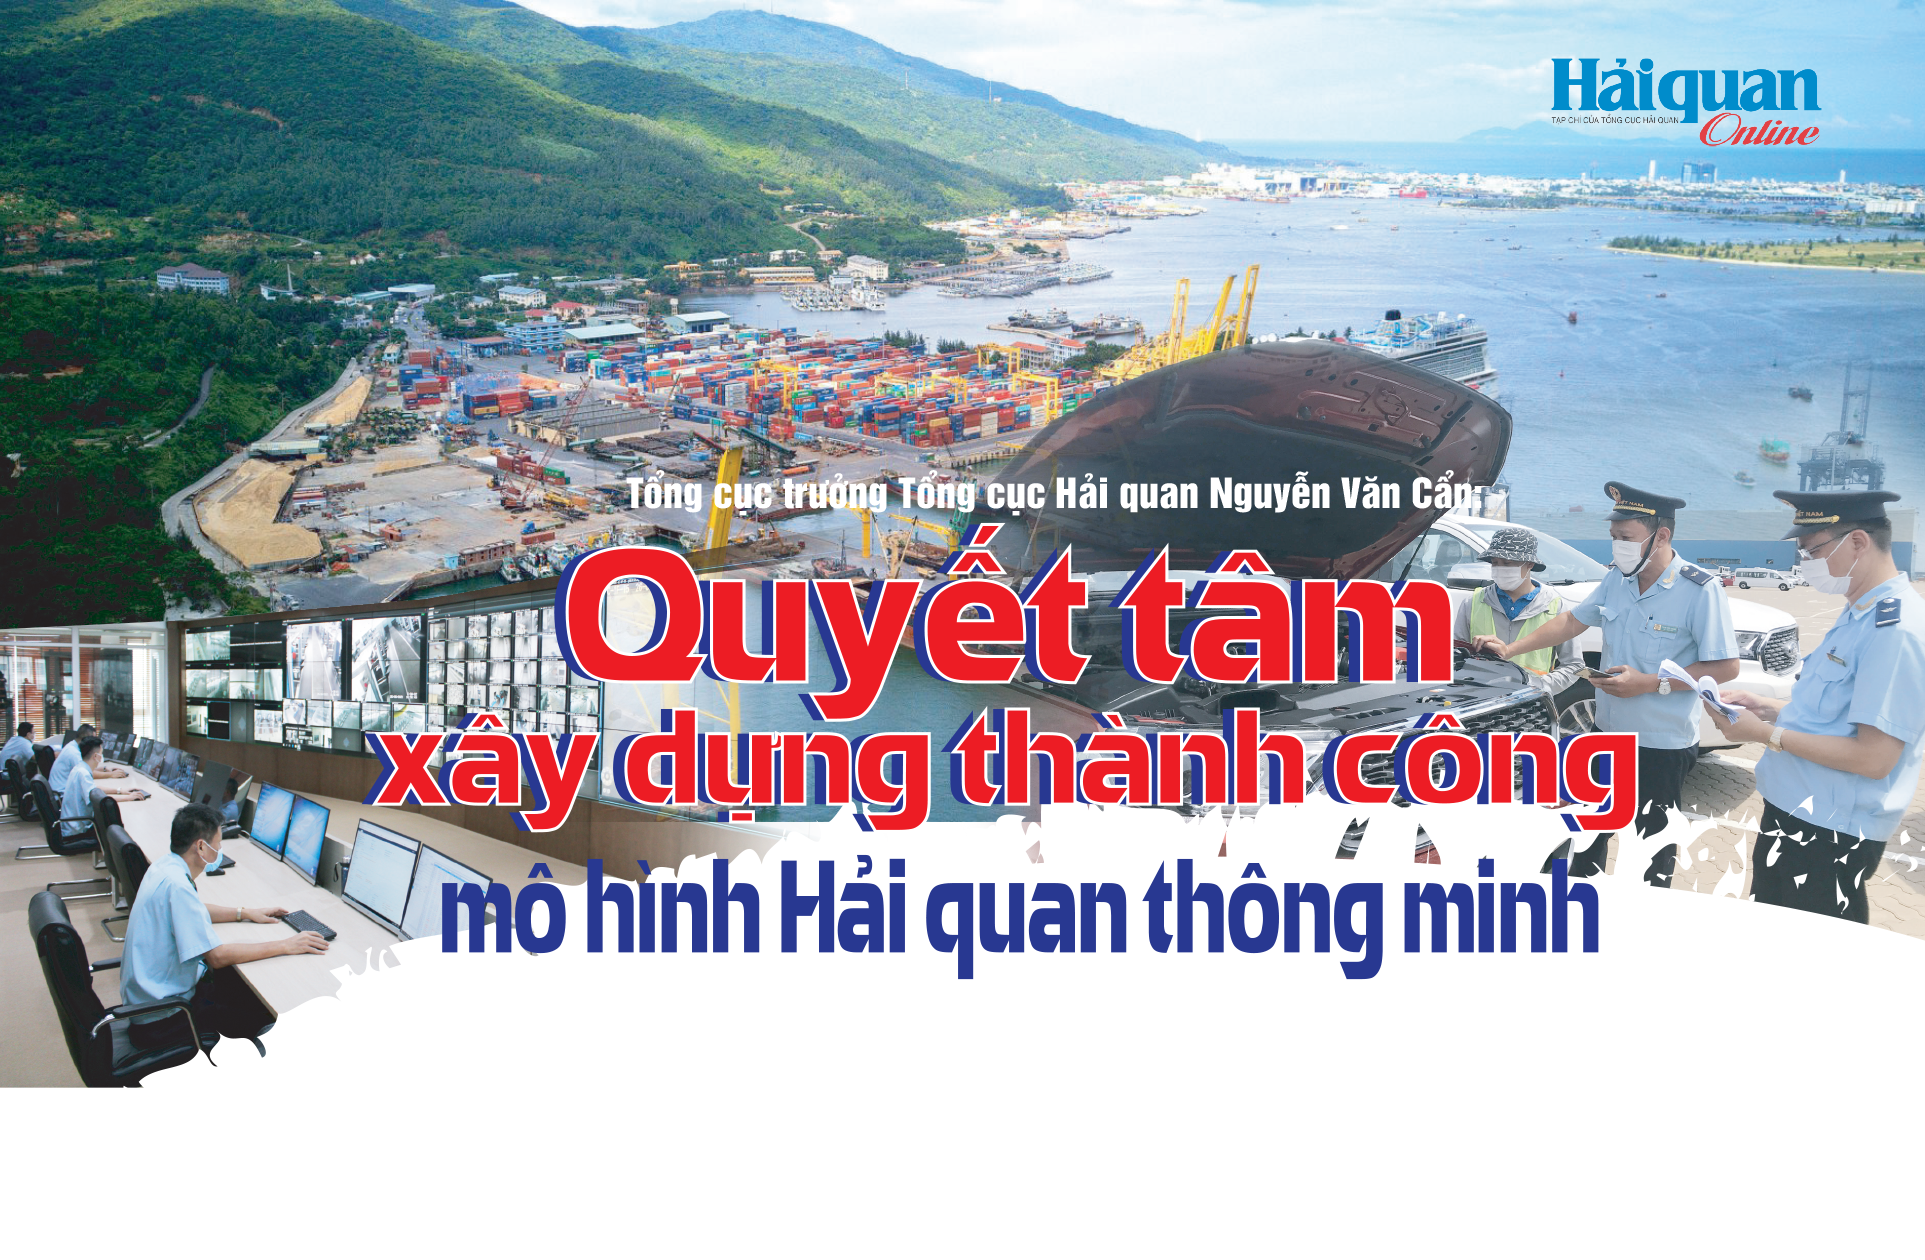 MEGASTORY: Tổng cục trưởng Tổng cục Hải quan Nguyễn Văn Cẩn: Quyết tâm xây dựng thành công mô hình Hải quan thông minh